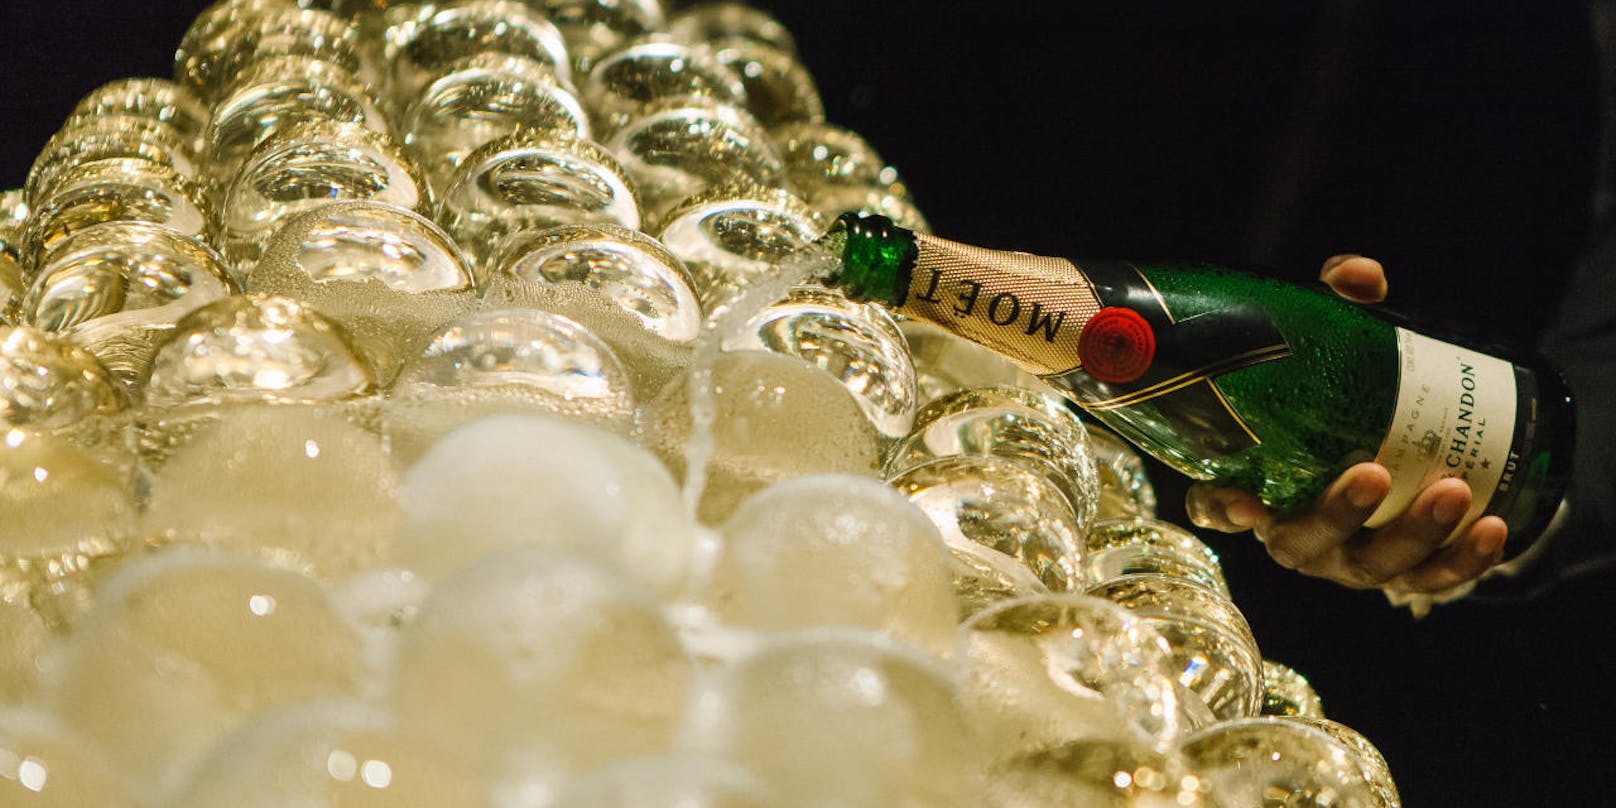 Champagner ist der Inbegriff von Festlichkeit. Seine typischen Bläschen bekommt er während der Flaschengärung.